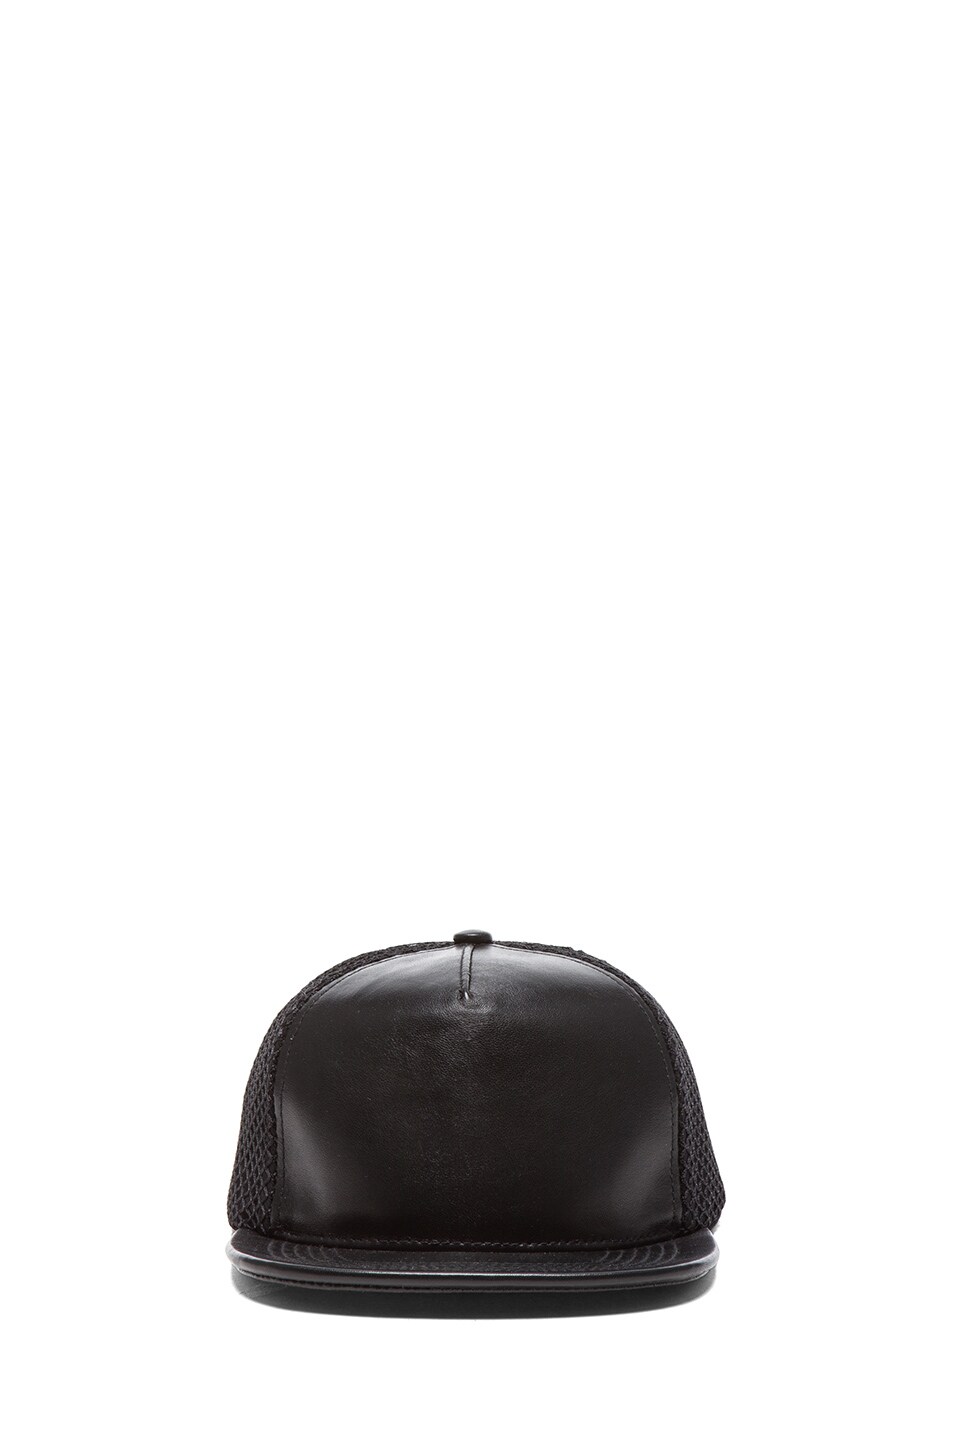 Image 1 of Stampd Lambskin Mesh Back Hat in Black